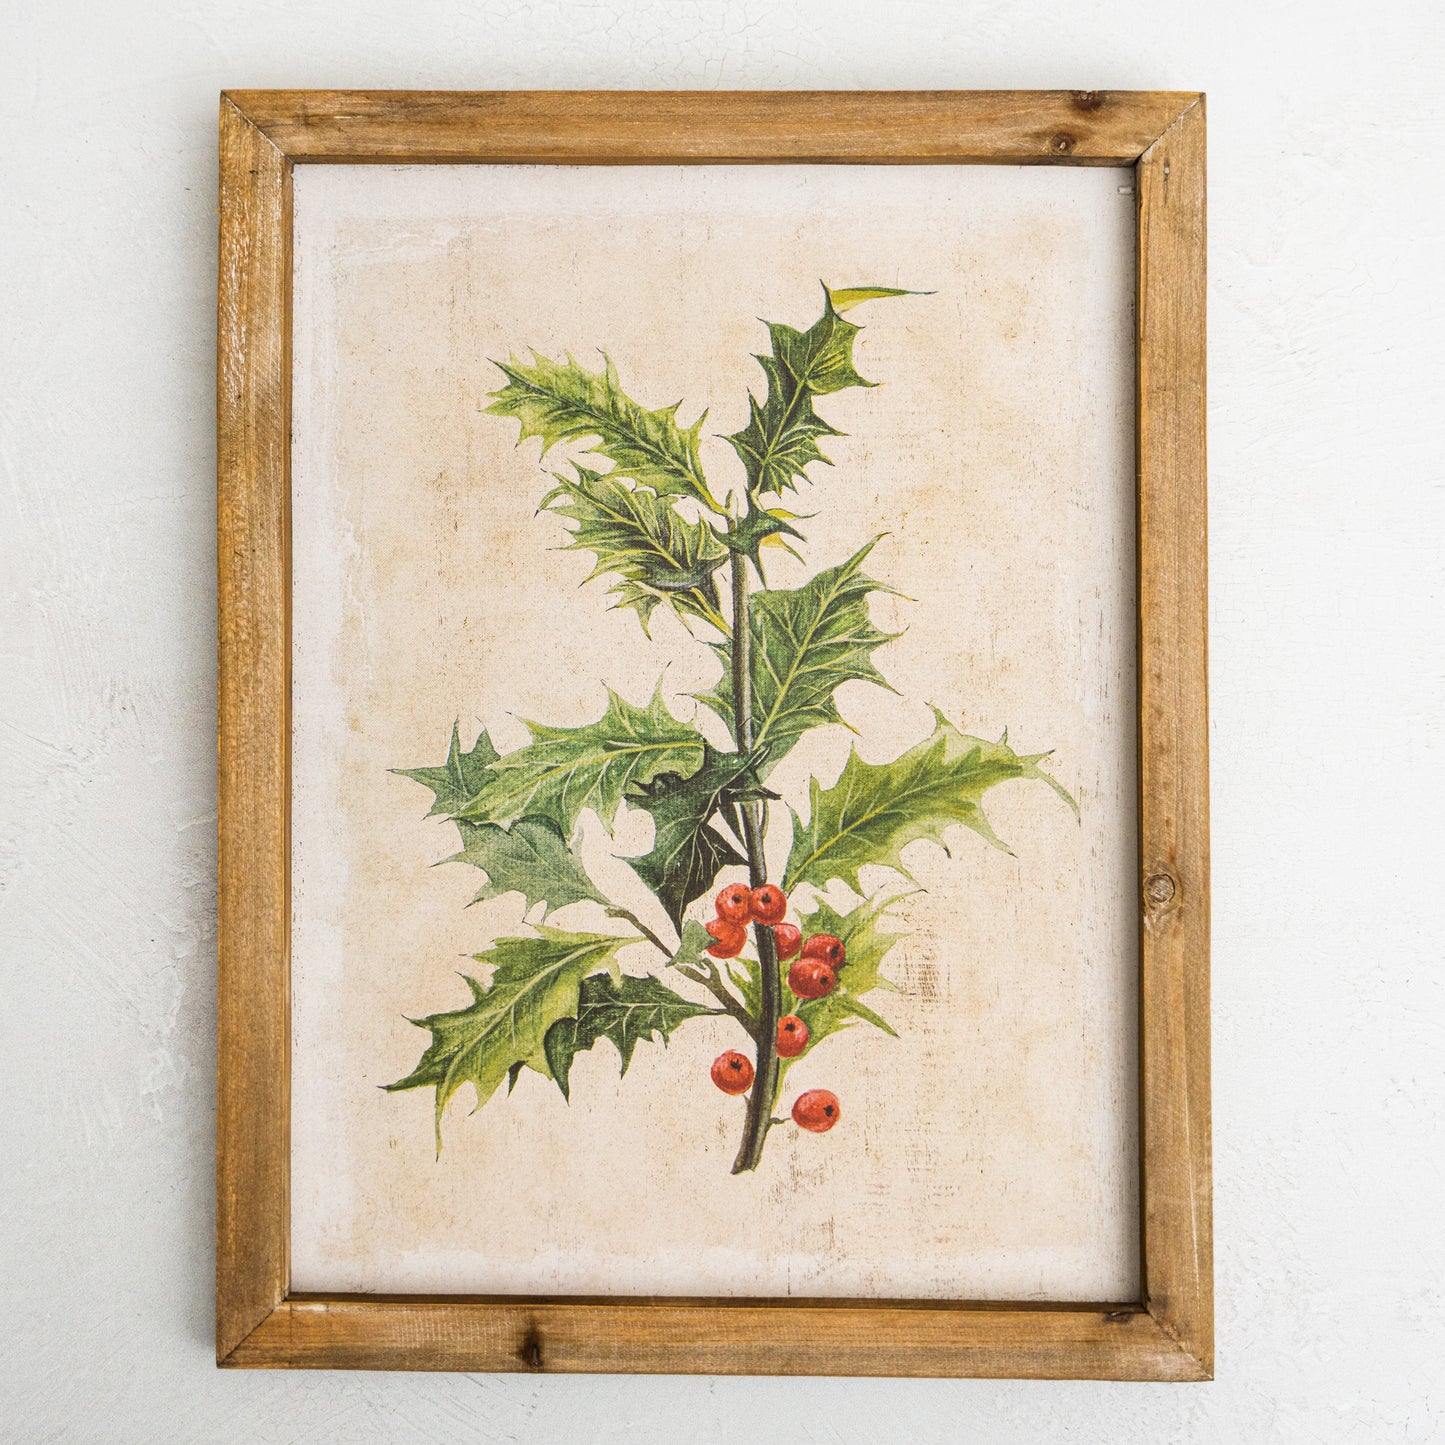 Wood Framed - Poinsettia & Holly Wall Decor